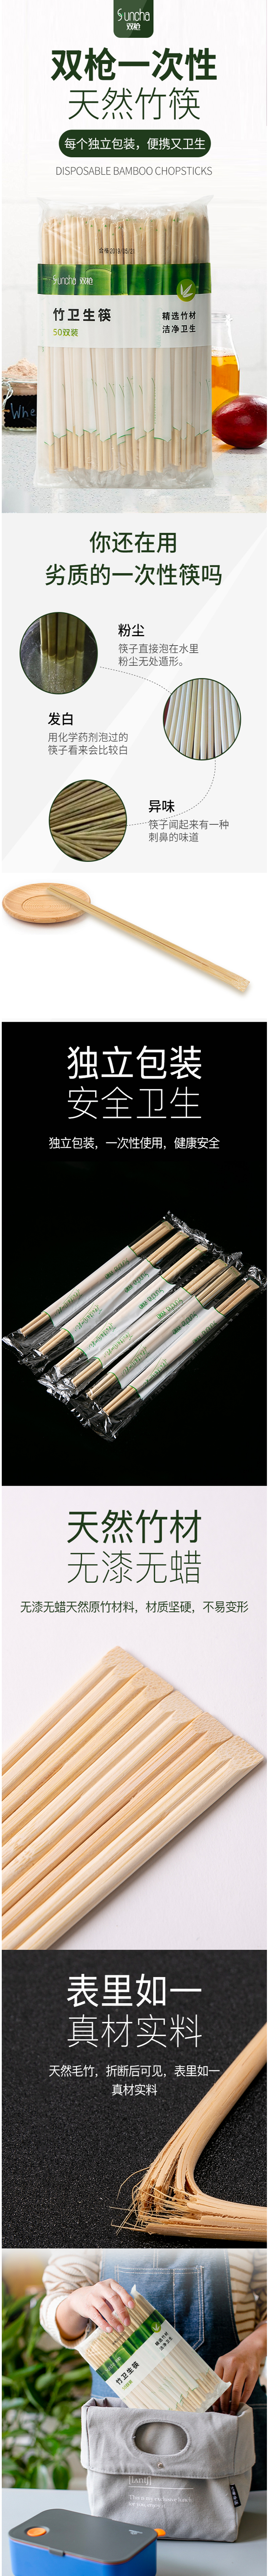 【双枪卫生筷子】双枪（Suncha）筷子 野营 家用 快餐一次性卫生筷子独立包装竹筷子50双装 【行.png